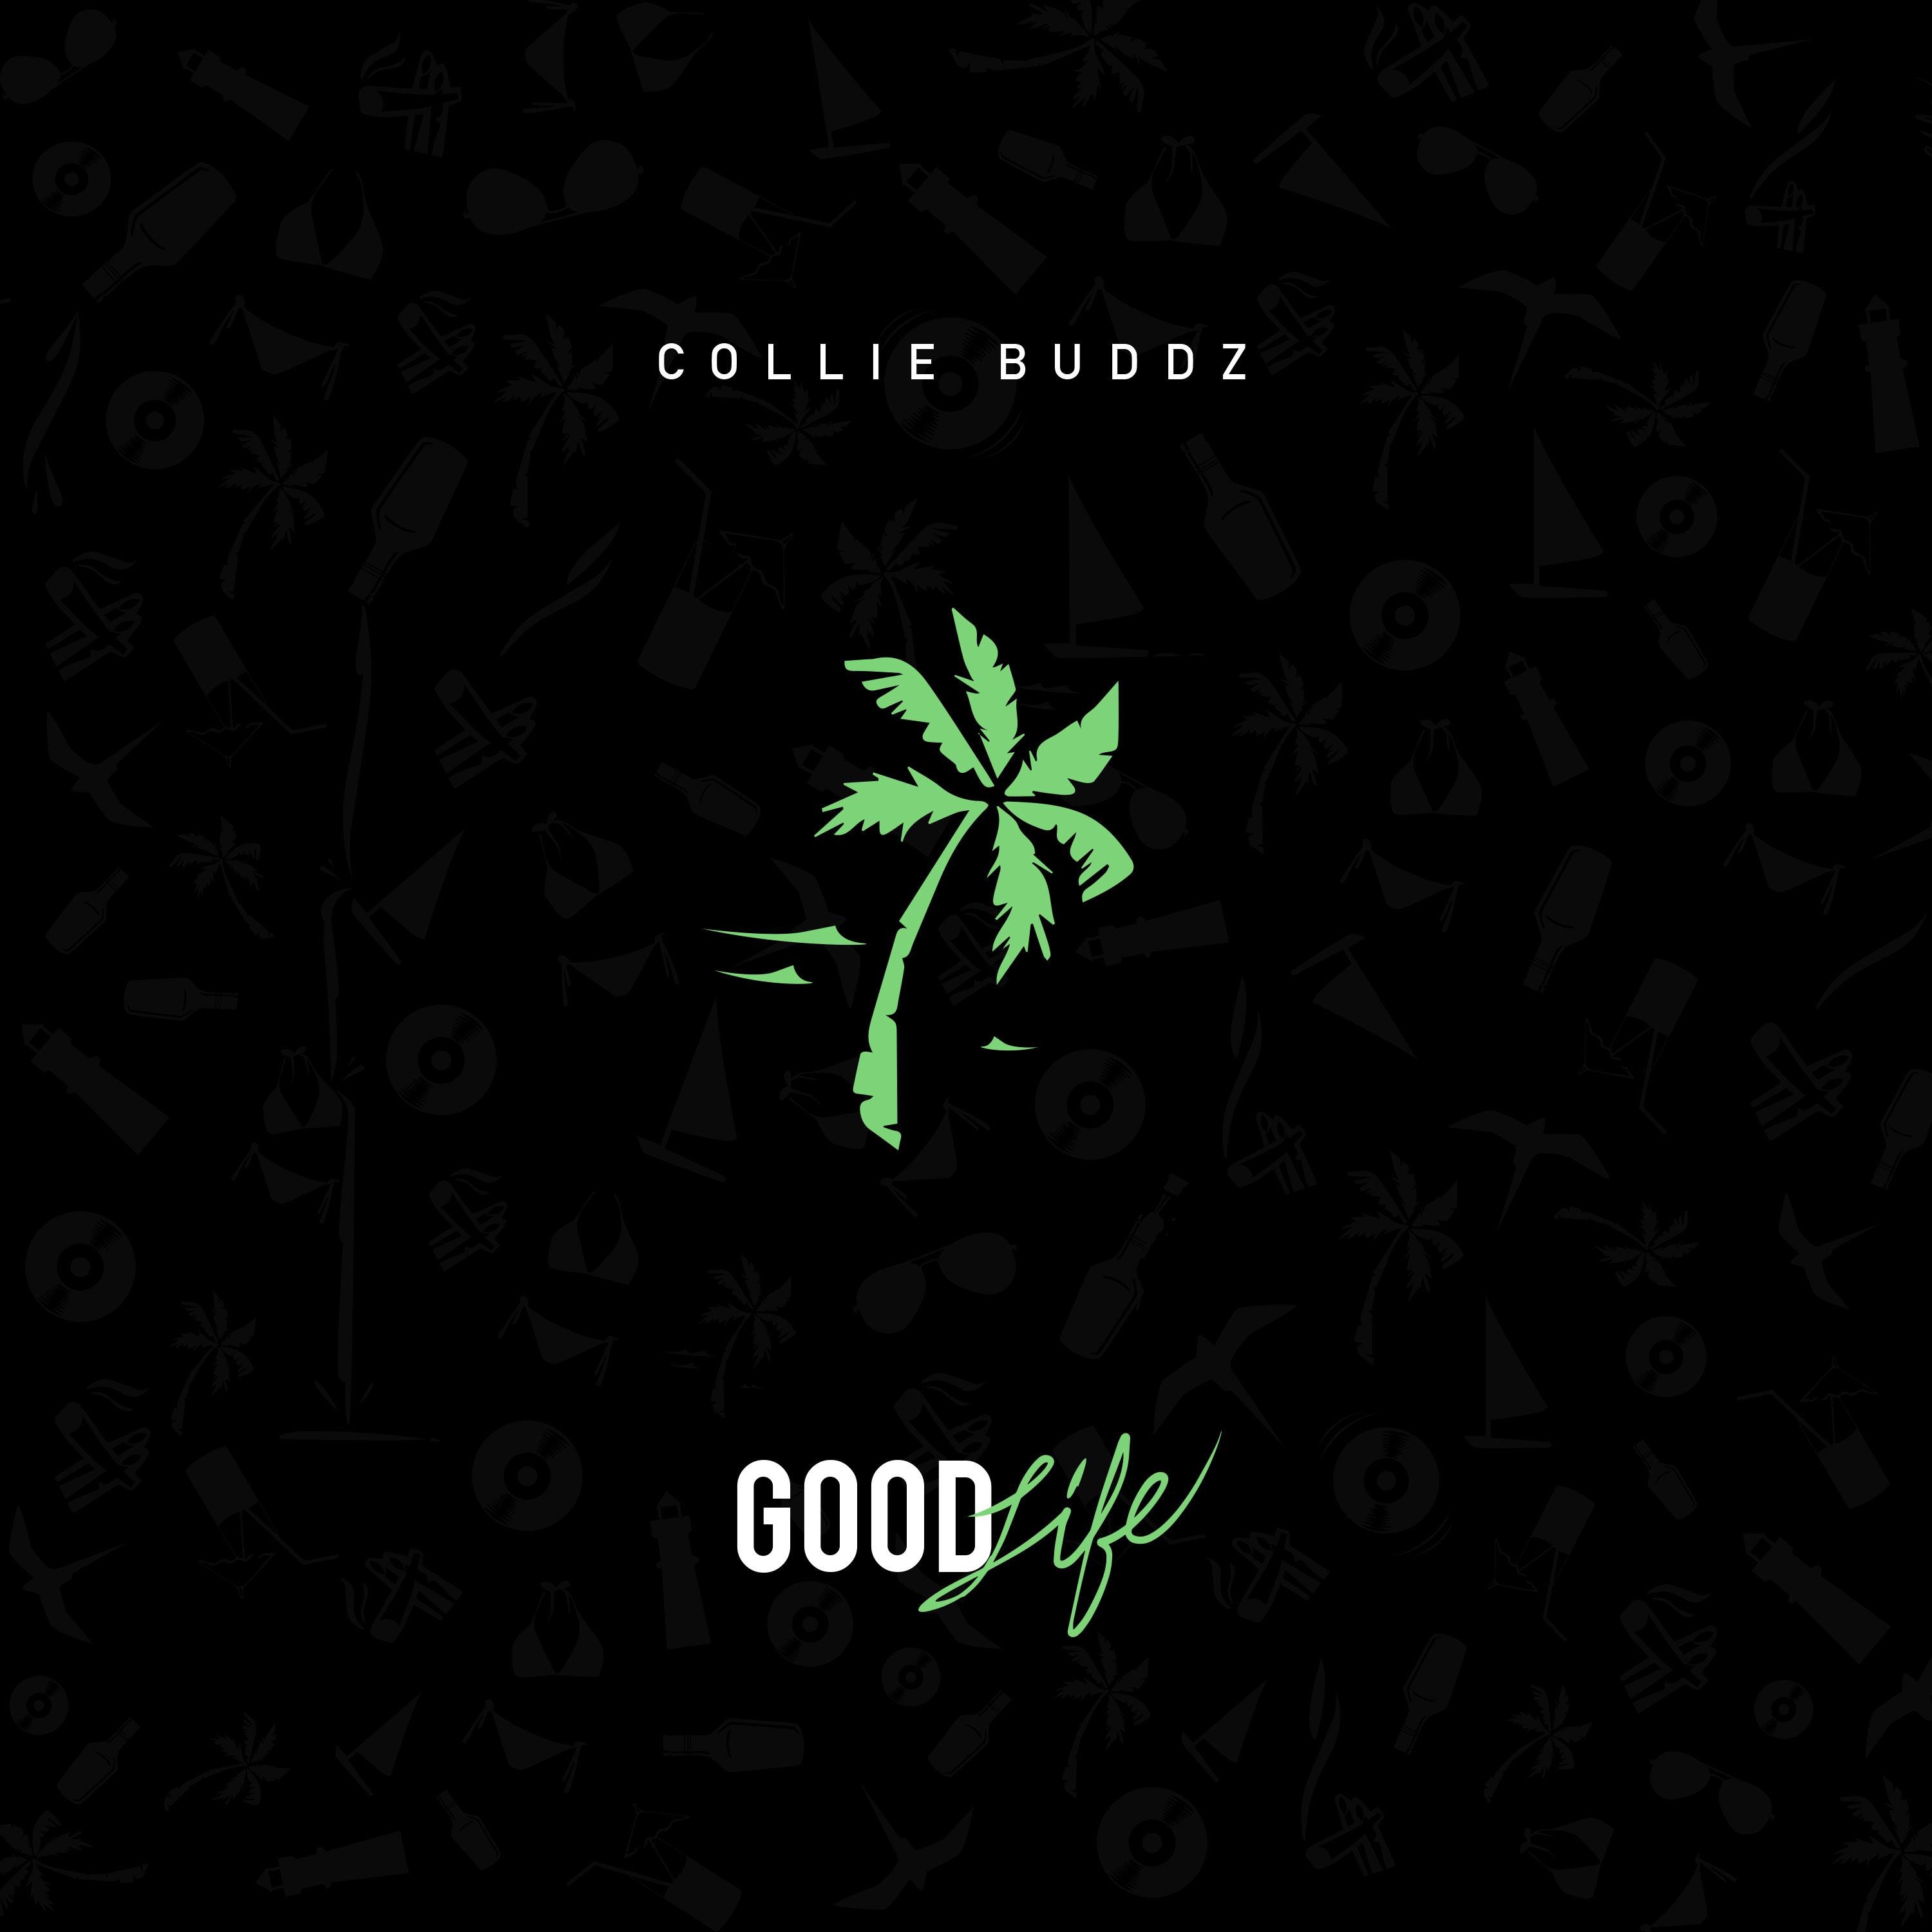 Collie Buddz - Good Life